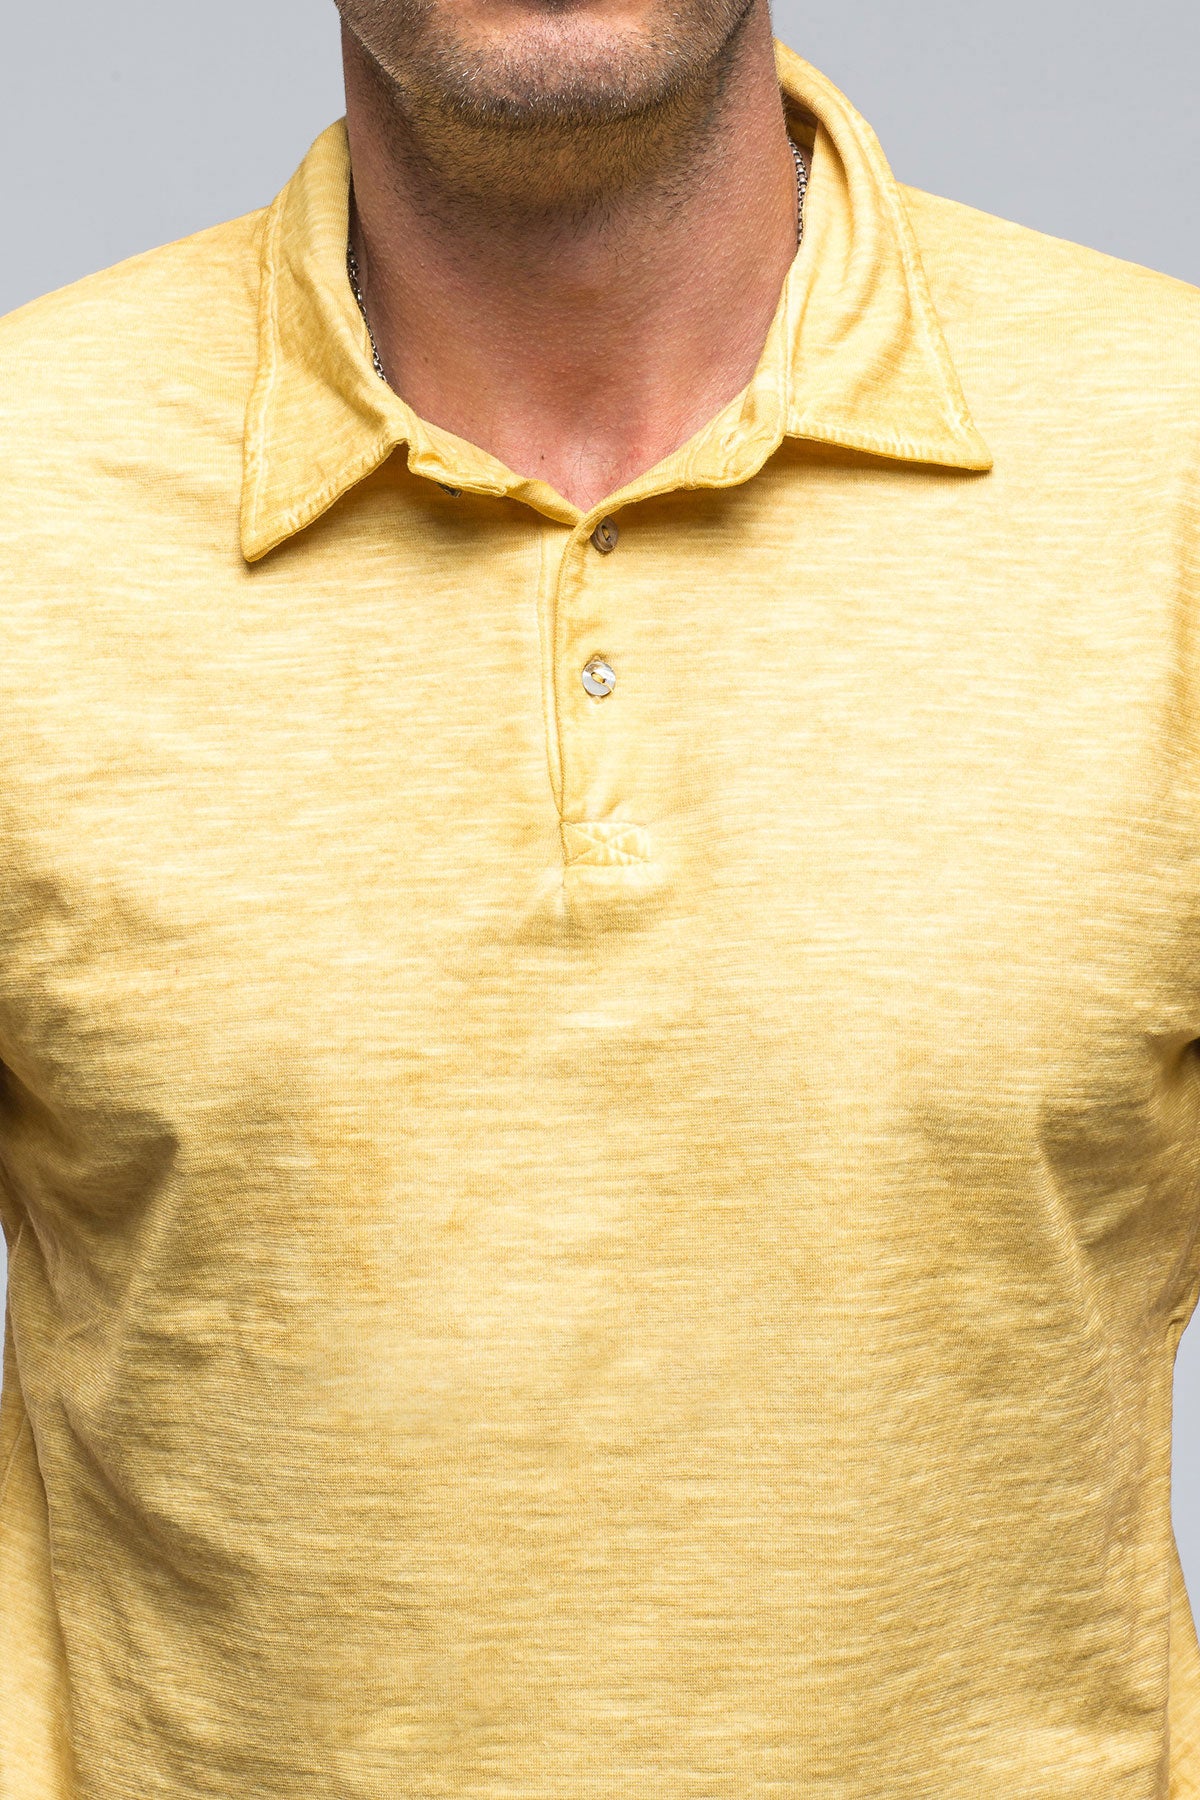 Soho Polo in Yellow | Mens - Shirts - Polos | Gimo's Cotton